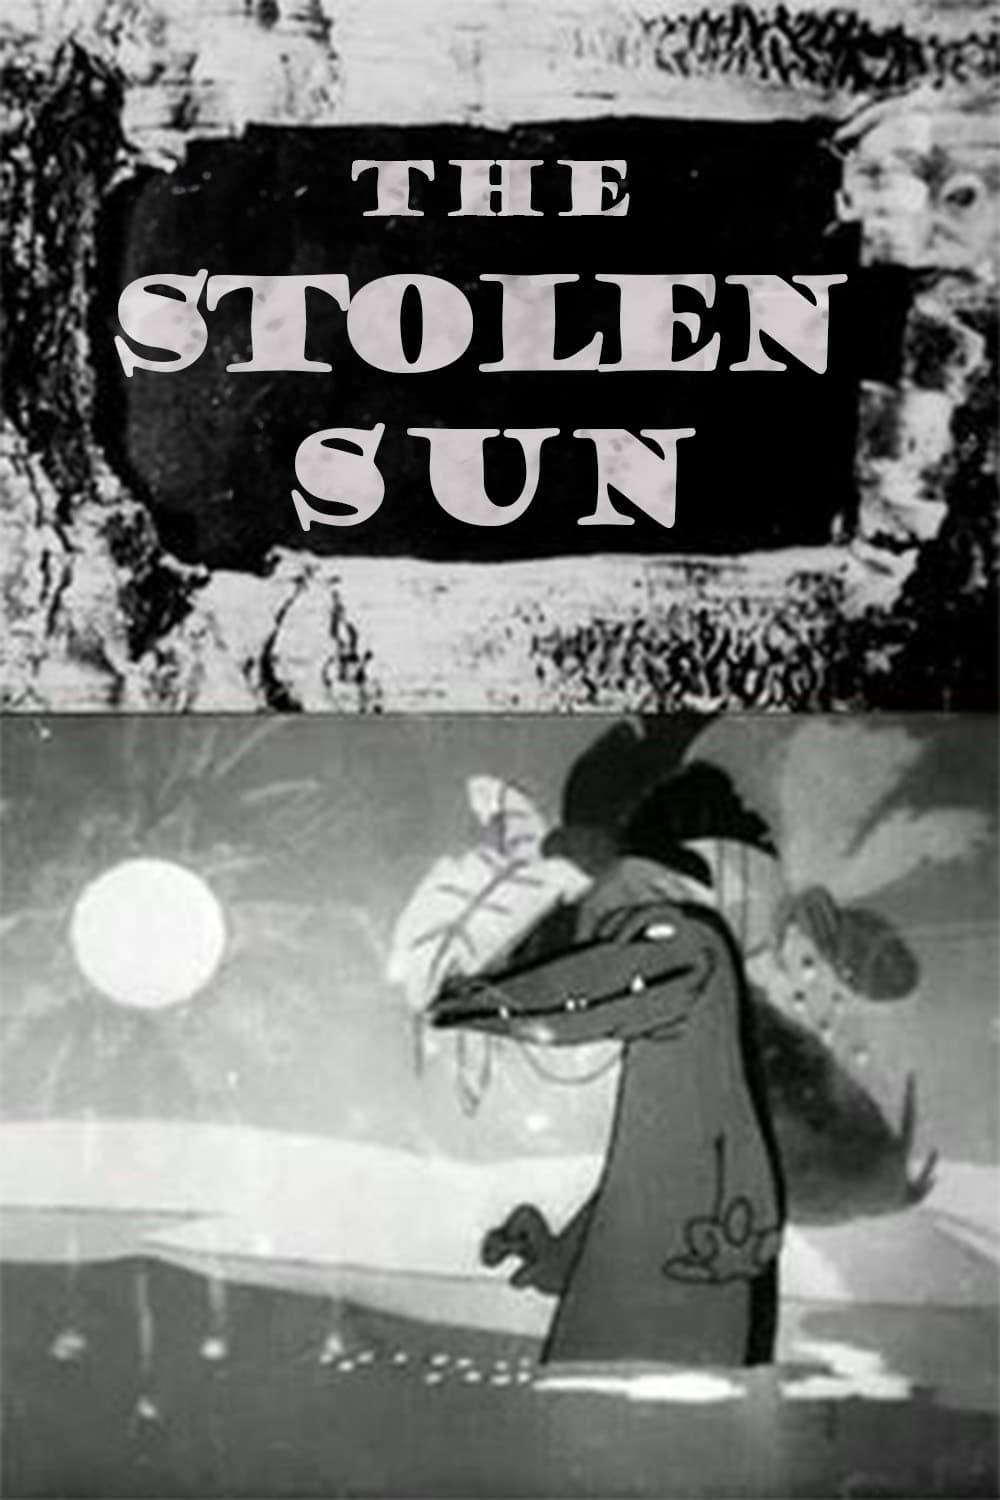 The Stolen Sun